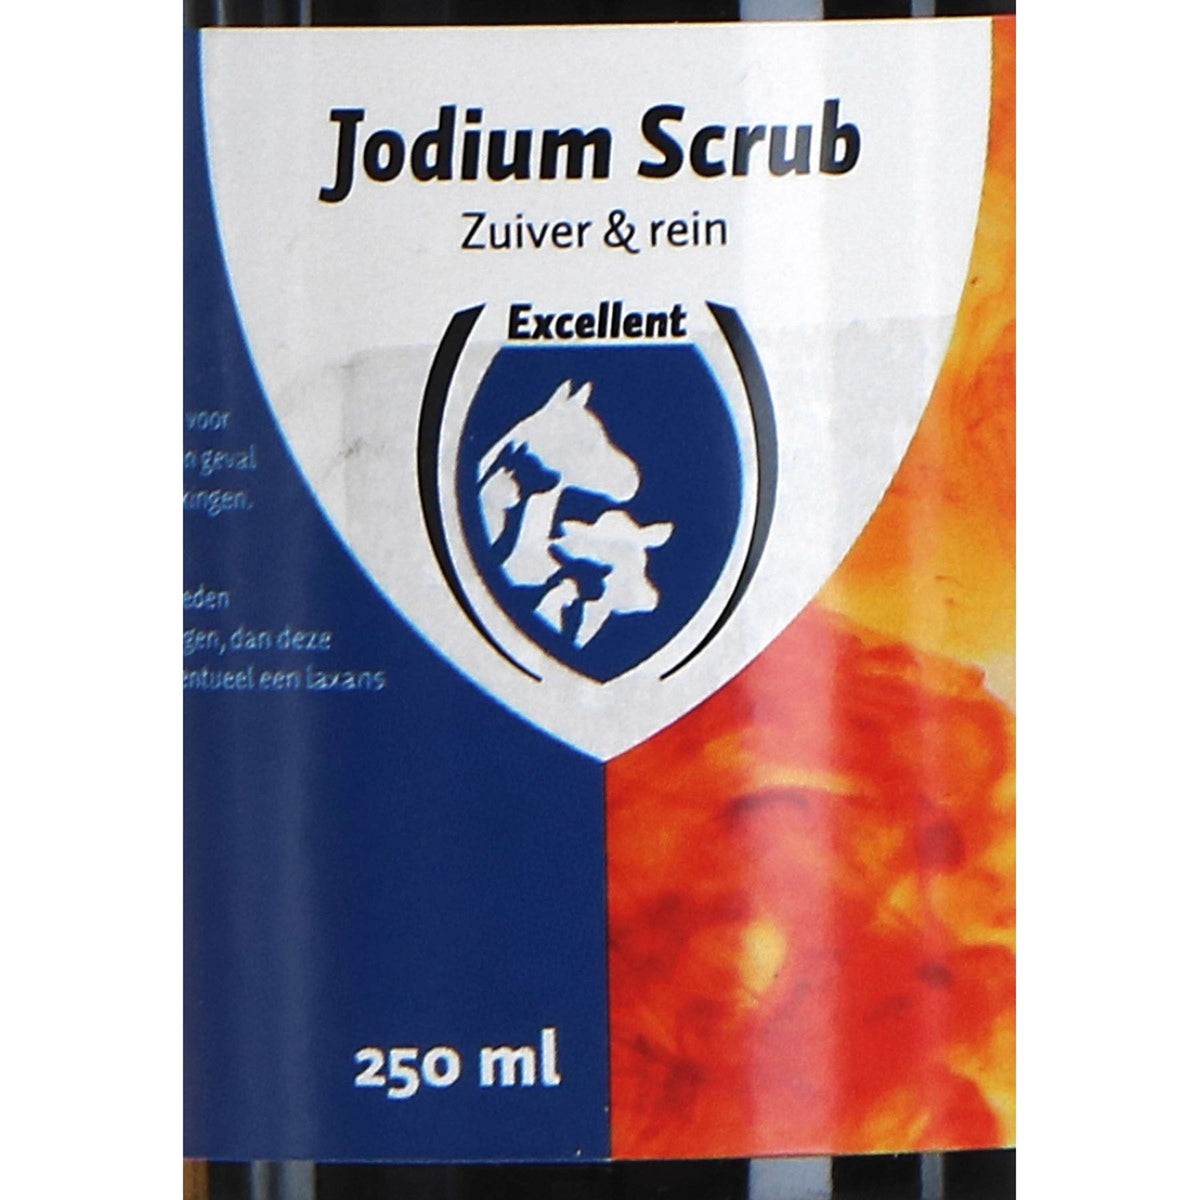 Excellent Jodium Scrub